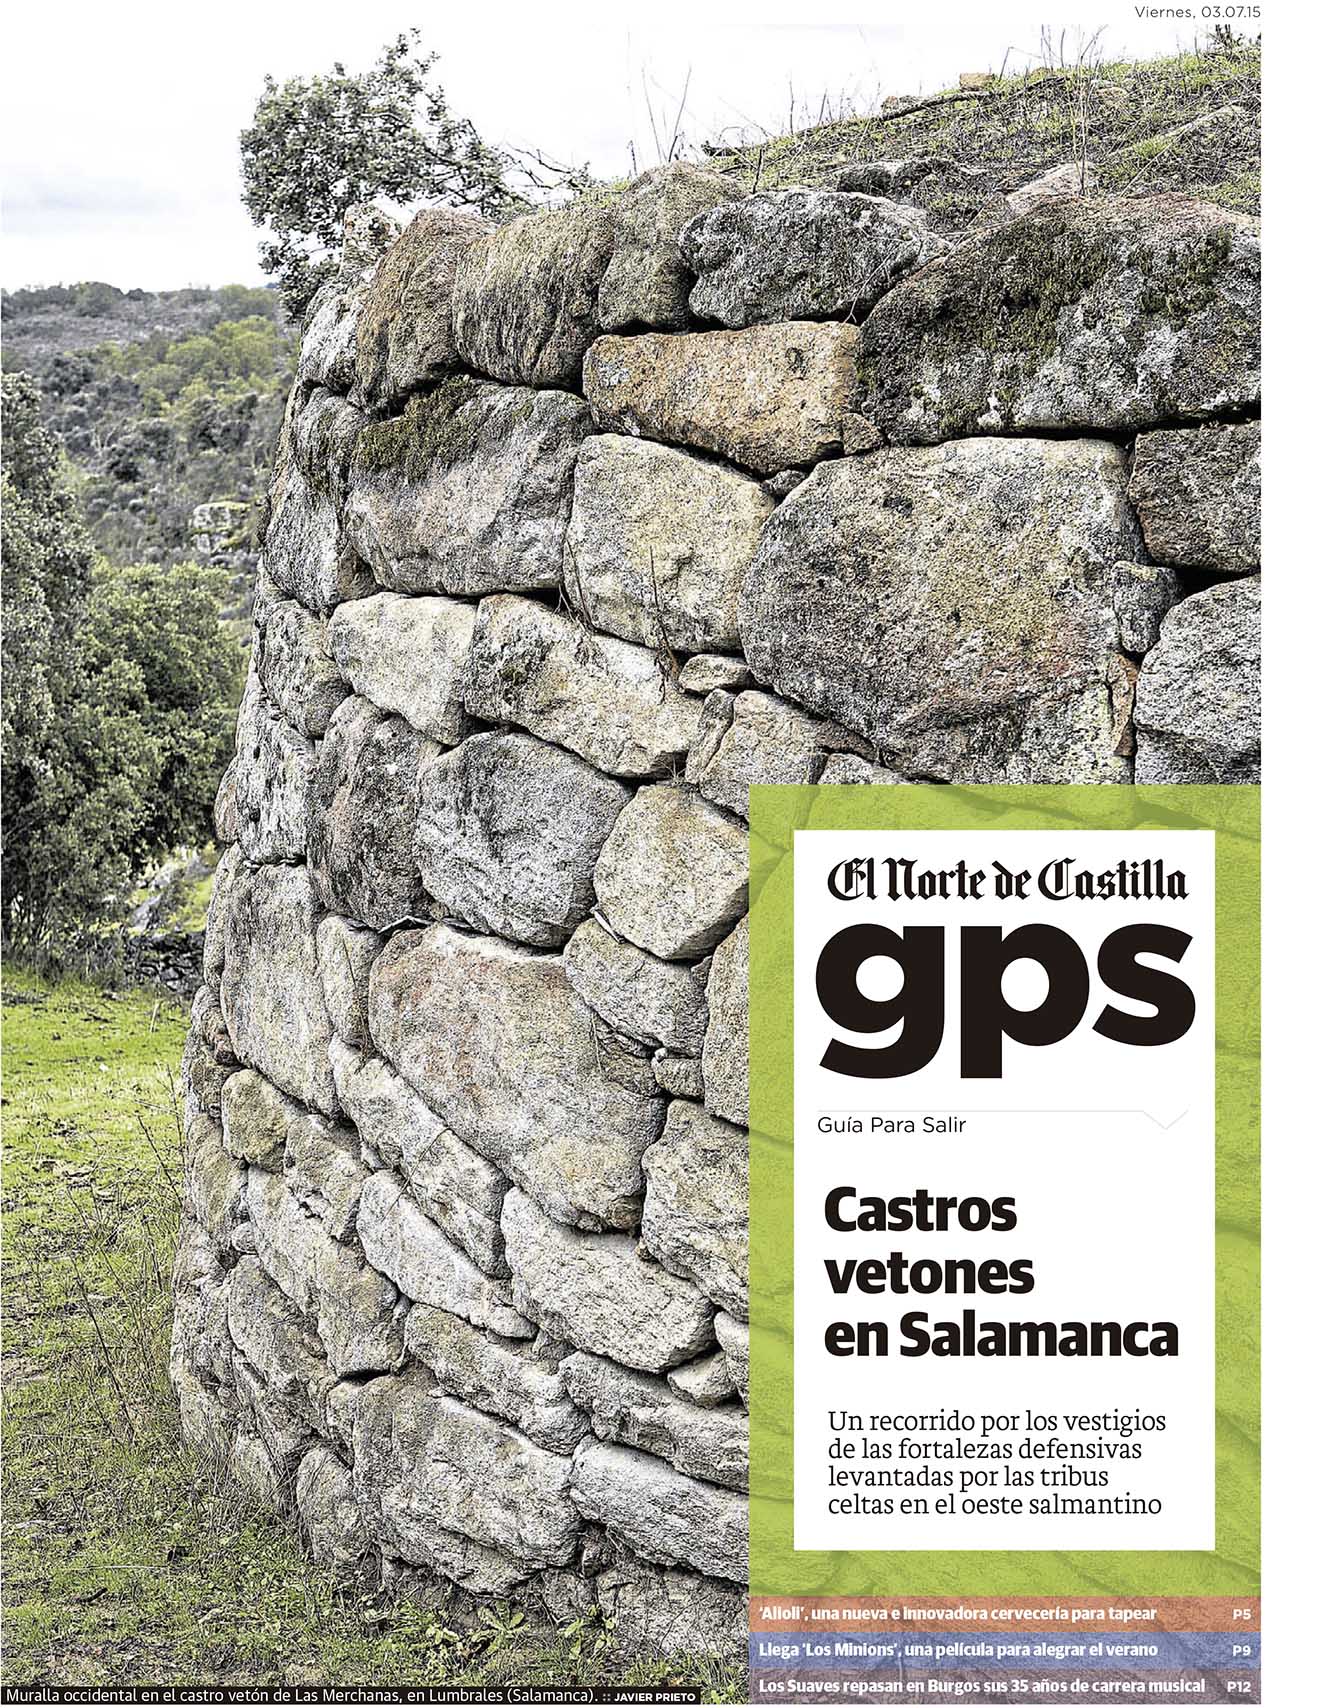 Territorio vetón. Reportaje sobre los castros salmantinos de esta etnia en el oeste salmantino publicado por Javier Prieto Gallego en EL NORTE DE CASTILLA.